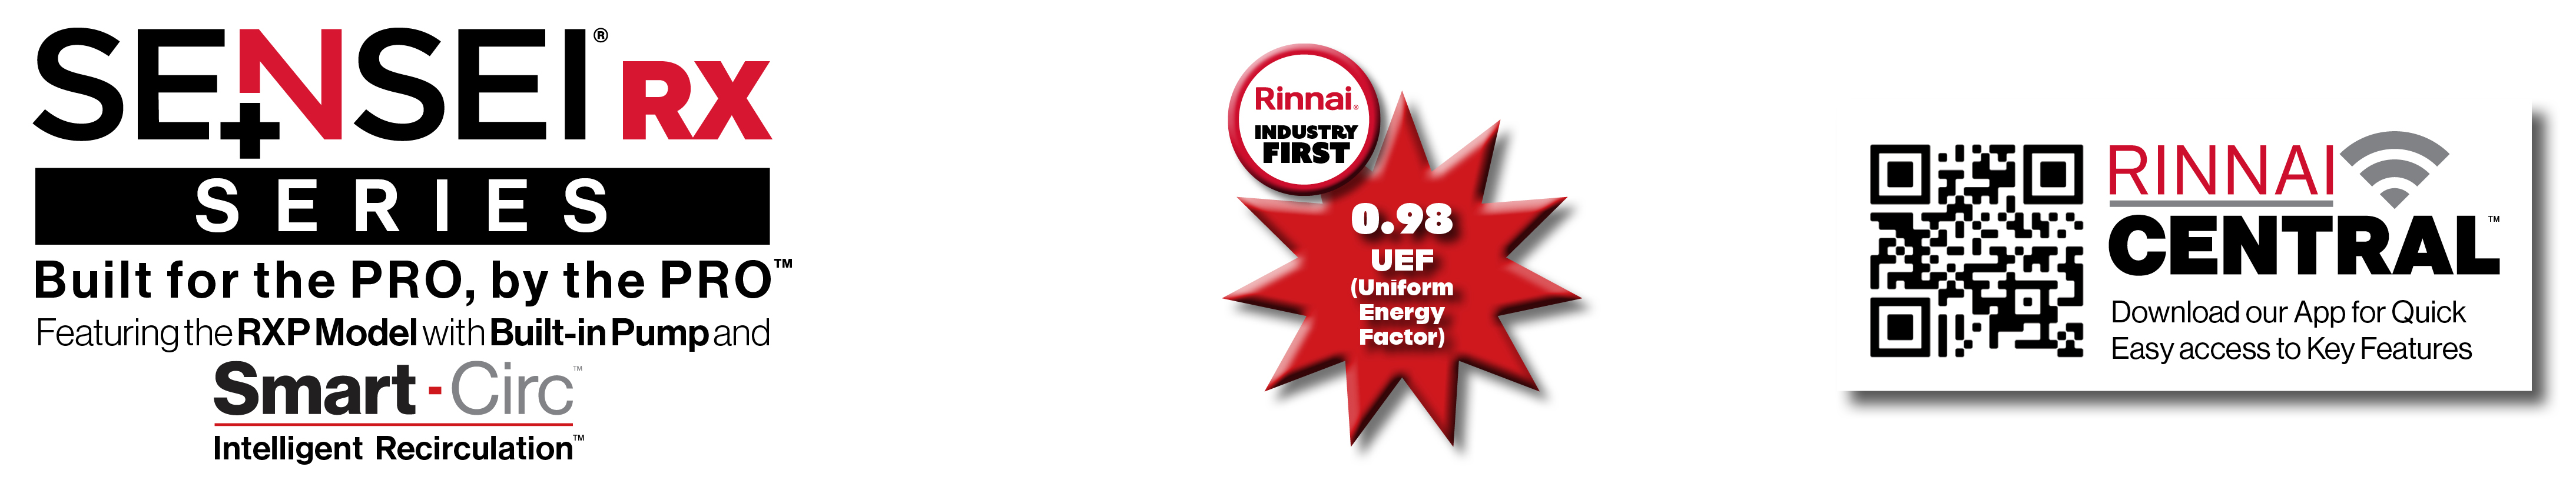 Modèle SENSEI RX, 0,98 UEF (Facteur énergétique uniforme), application mobile Central et image du code QR